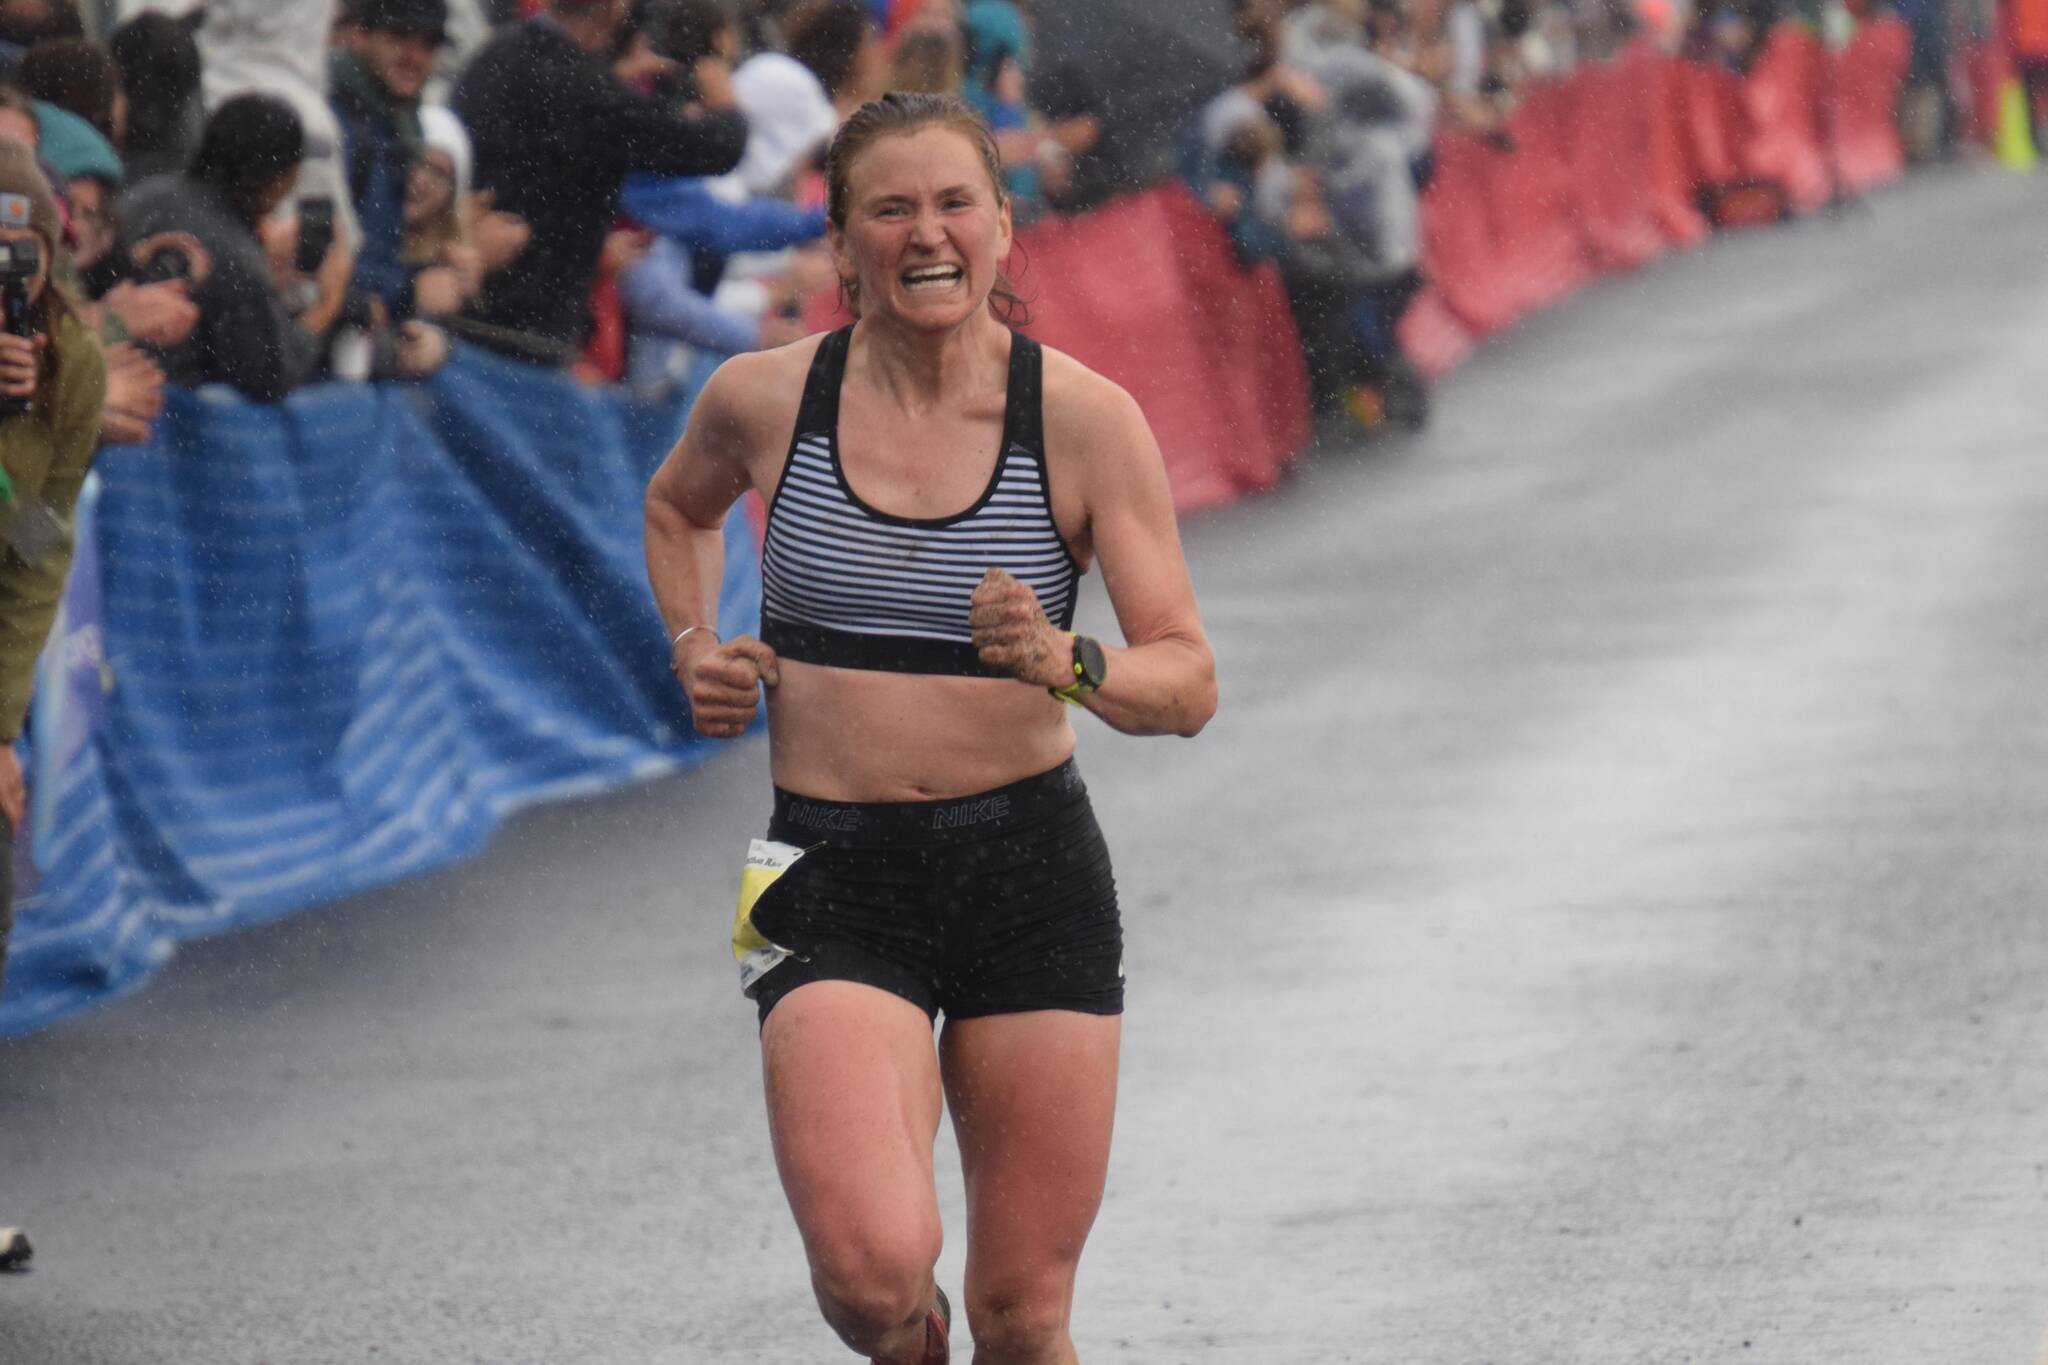 Hannah Lafleur of Seward defends her title in the women’s Mount Marathon Race in Seward, Alaska, on Wednesday, July 7, 2021. (Photo by Jeff Helminiak/Peninsula Clarion)